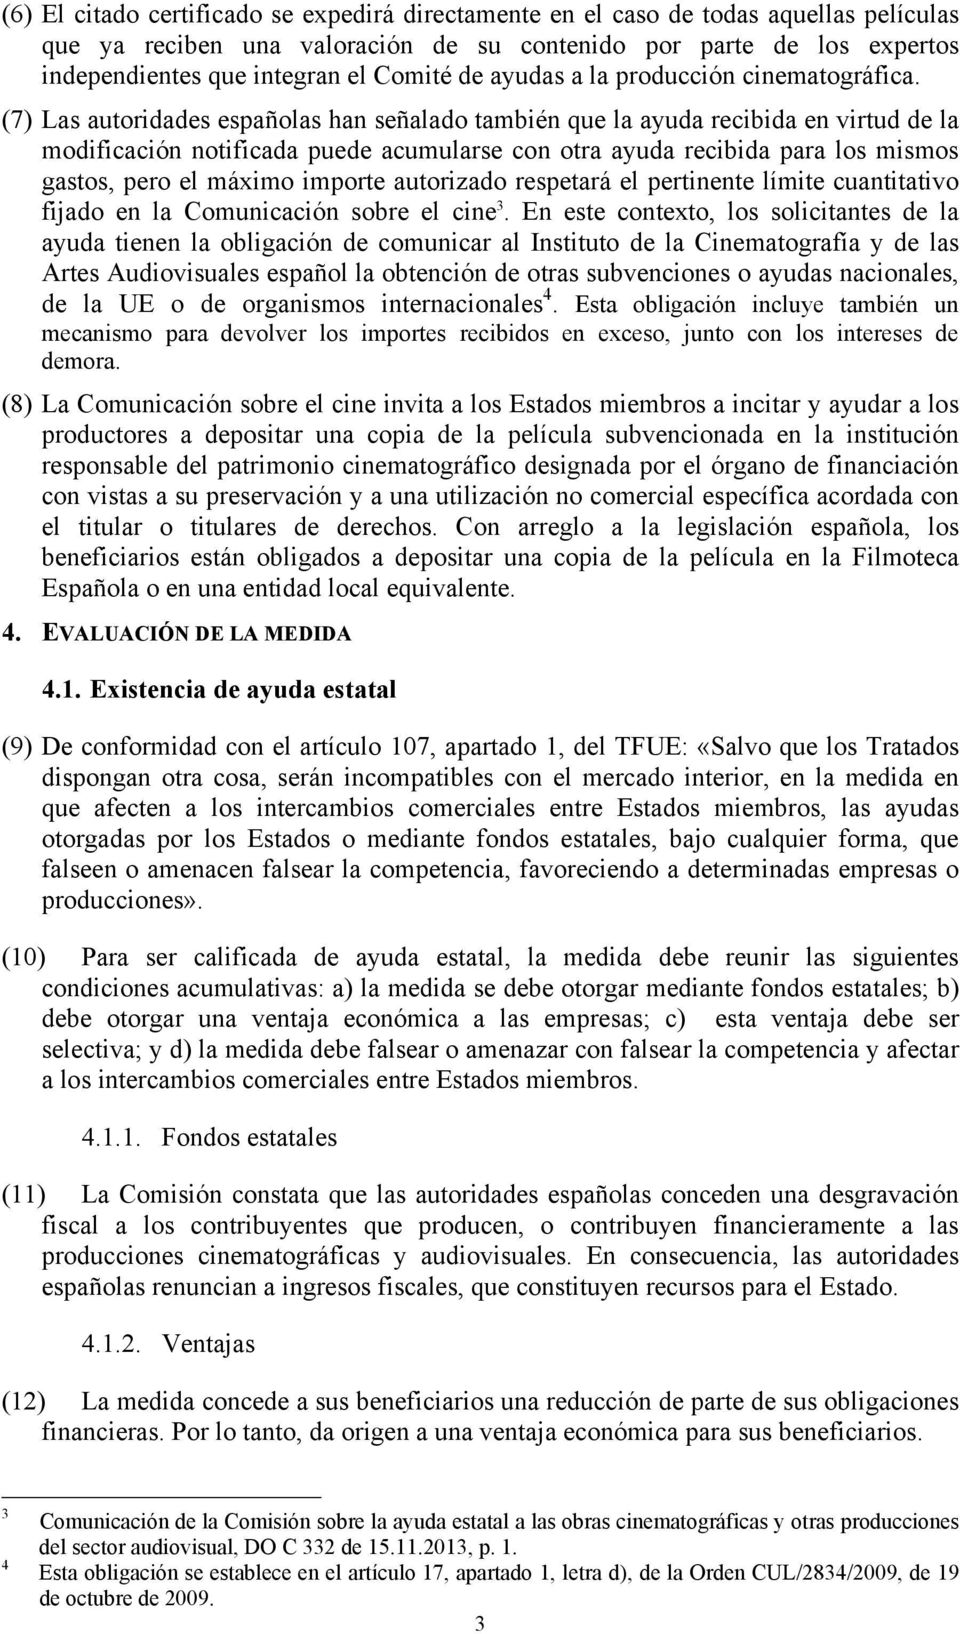 (7) Las autoridades españolas han señalado también que la ayuda recibida en virtud de la modificación notificada puede acumularse con otra ayuda recibida para los mismos gastos, pero el máximo